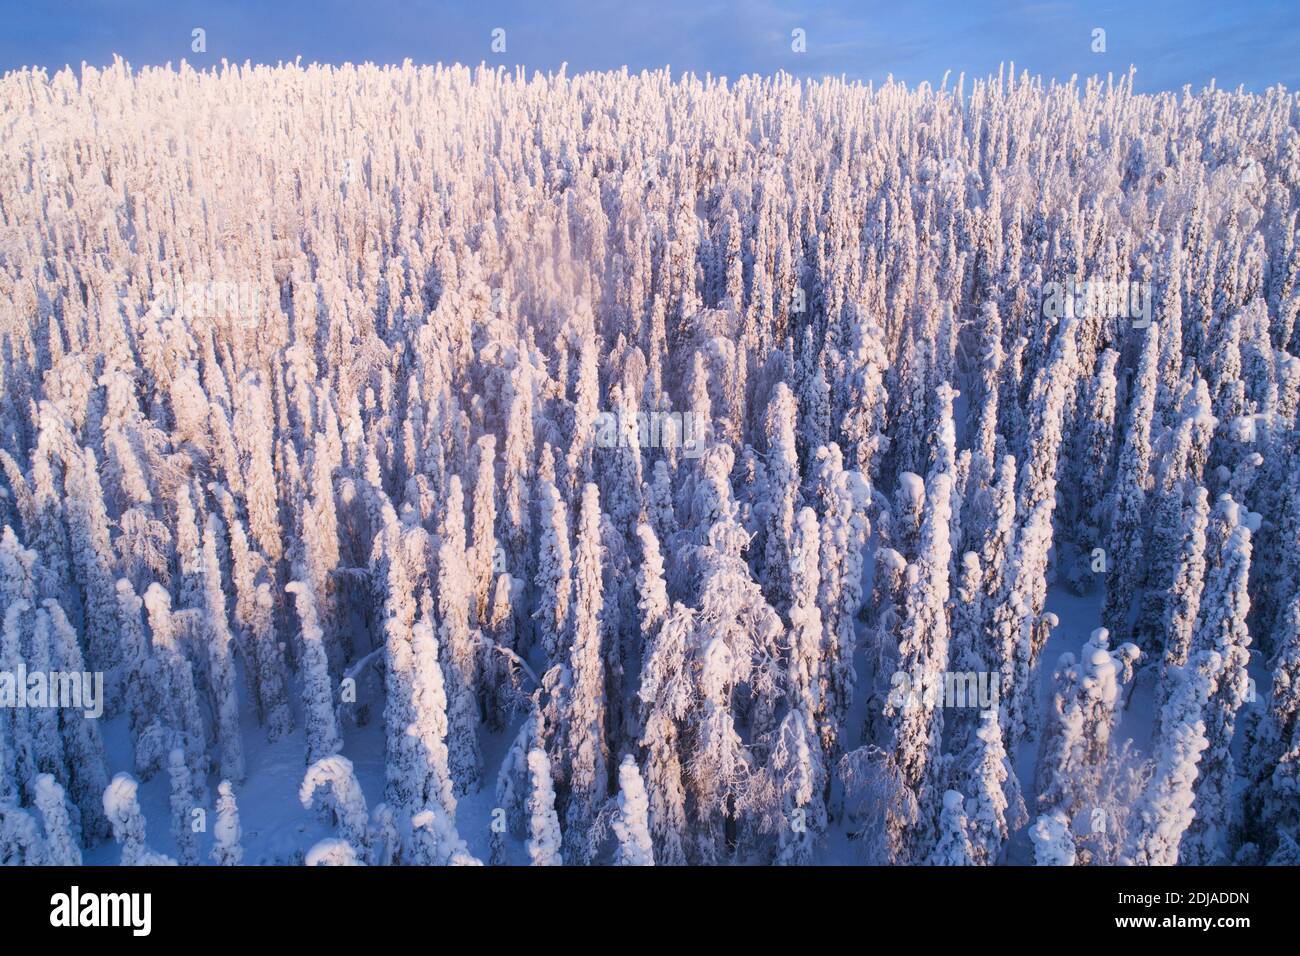 Schwere Schnee bedeckte Fichten in einem kalten Winterwunderland auf Konttainen Fell, in der Nähe von Kuusamo, Nordfinnland Stockfoto